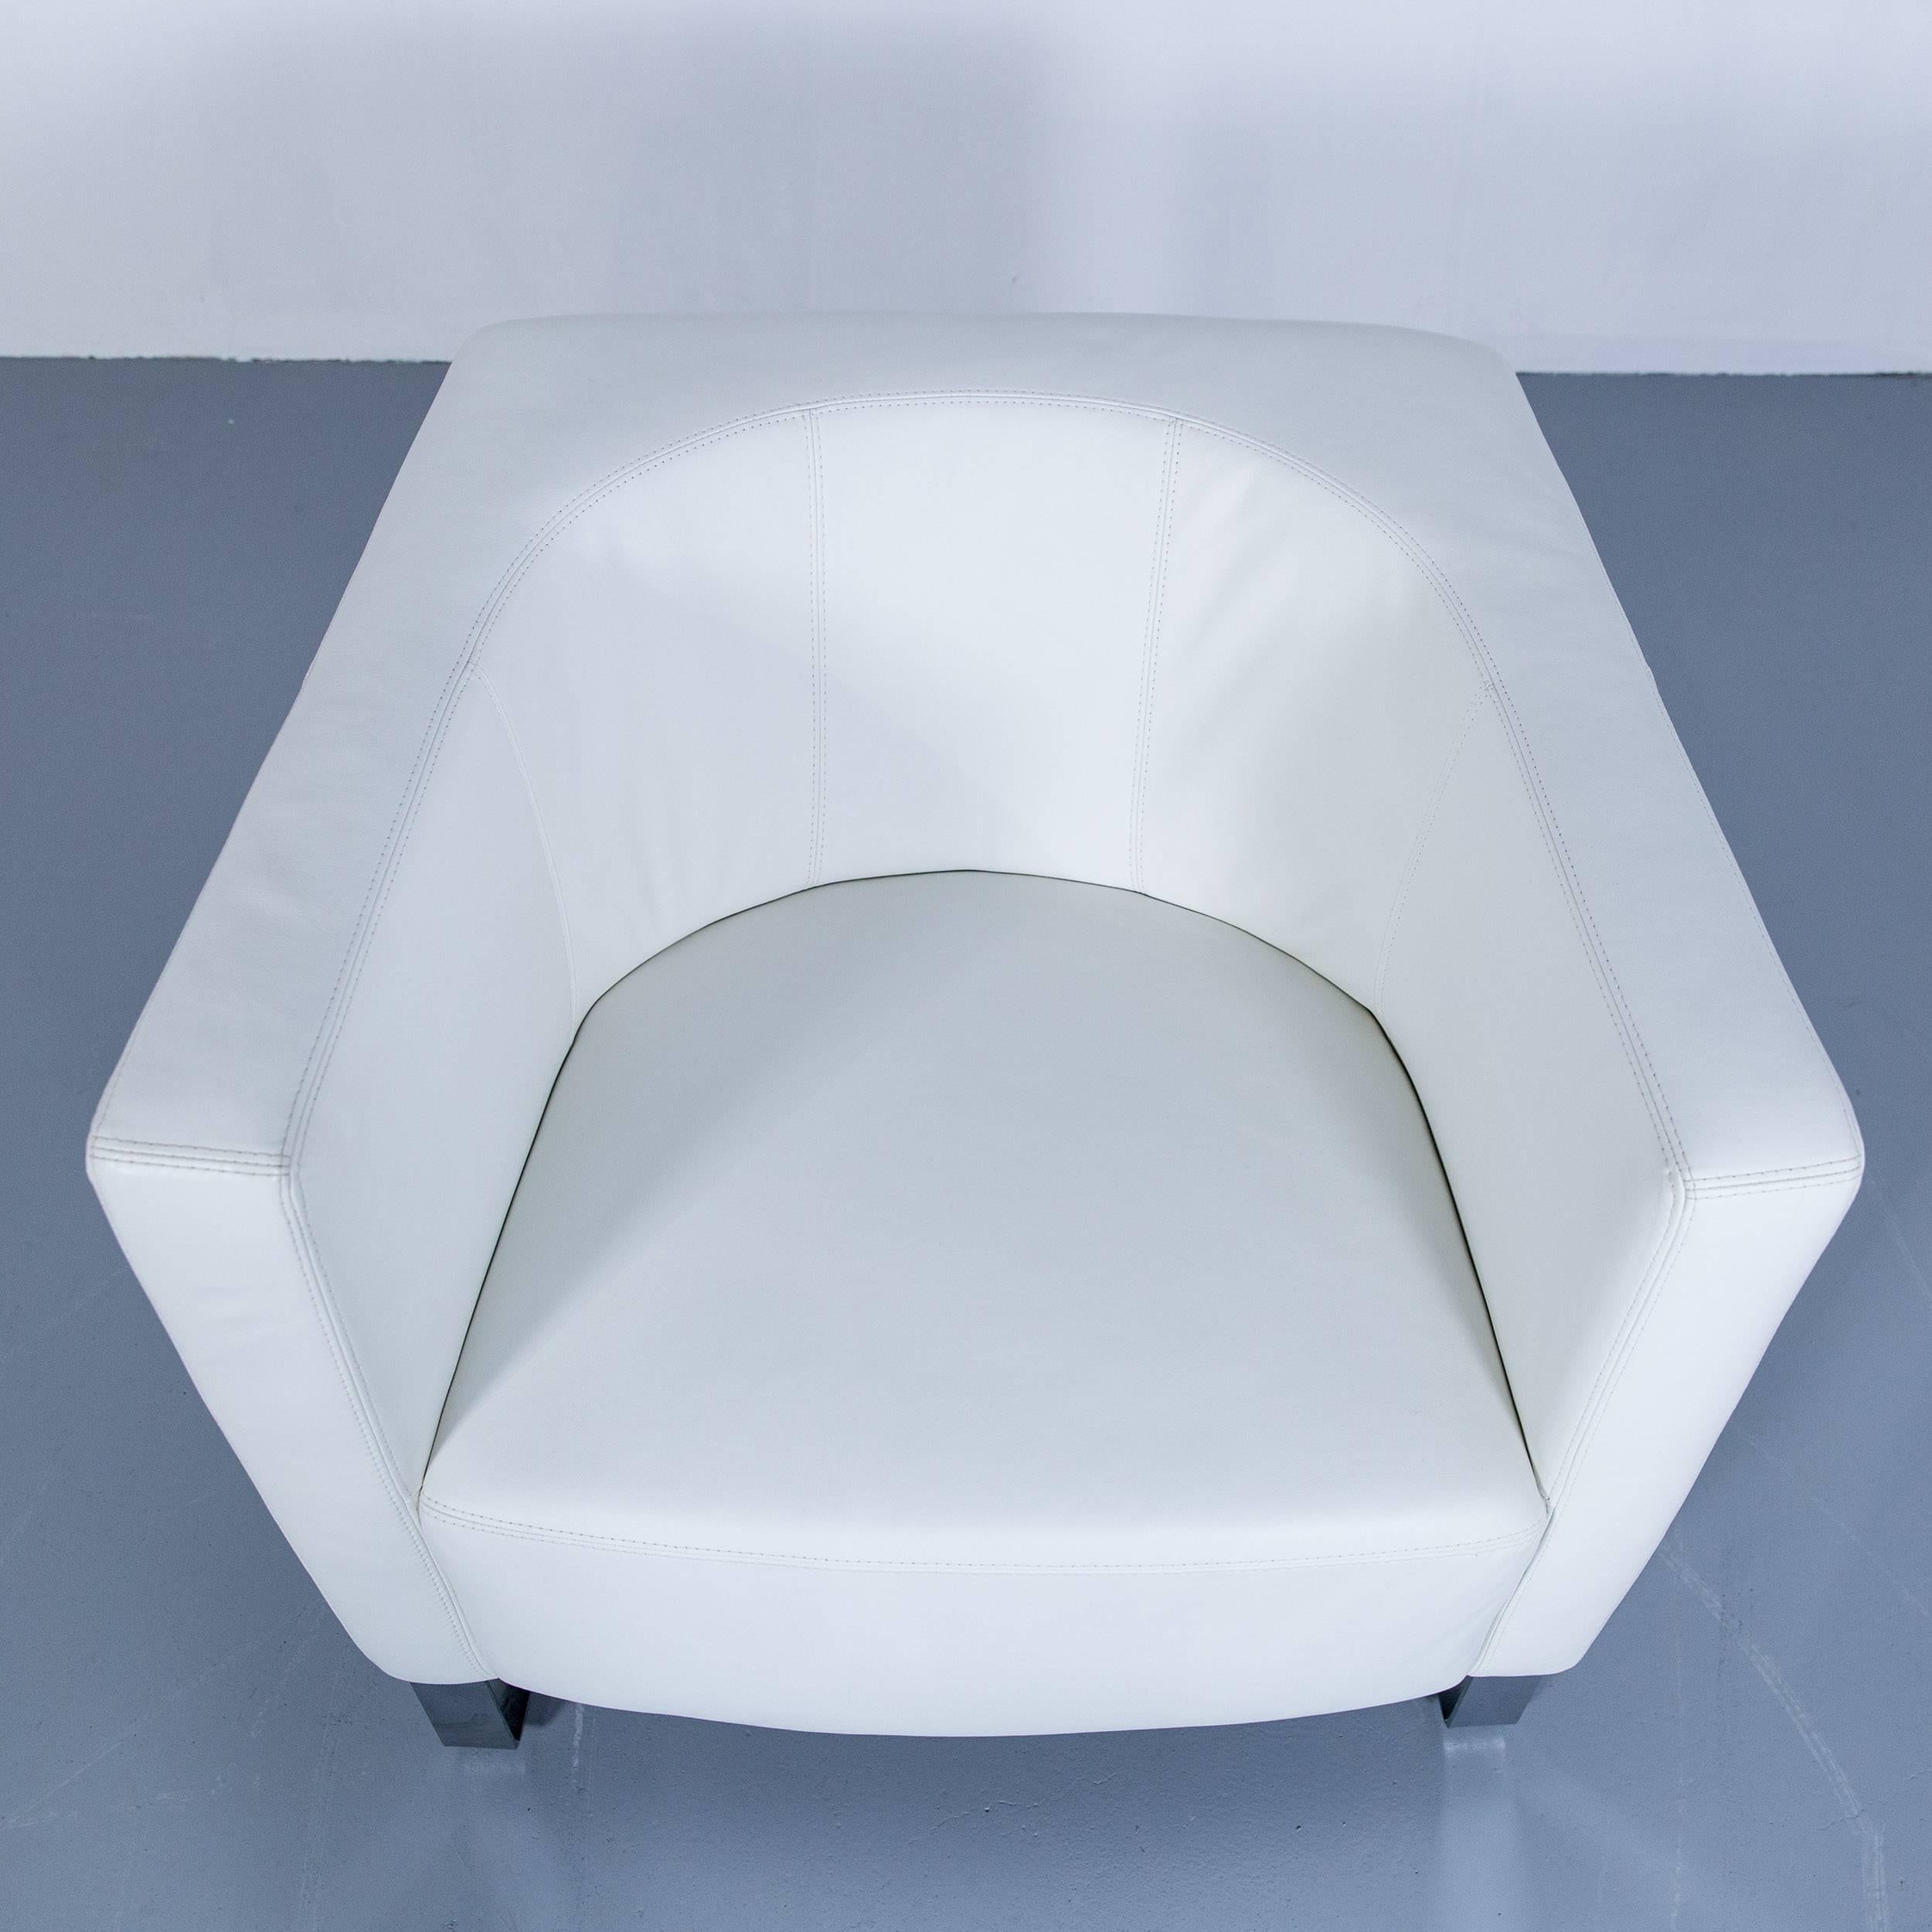 German Willi Schillig Havana Designer Leather Armchair White One Seat Couch Modern